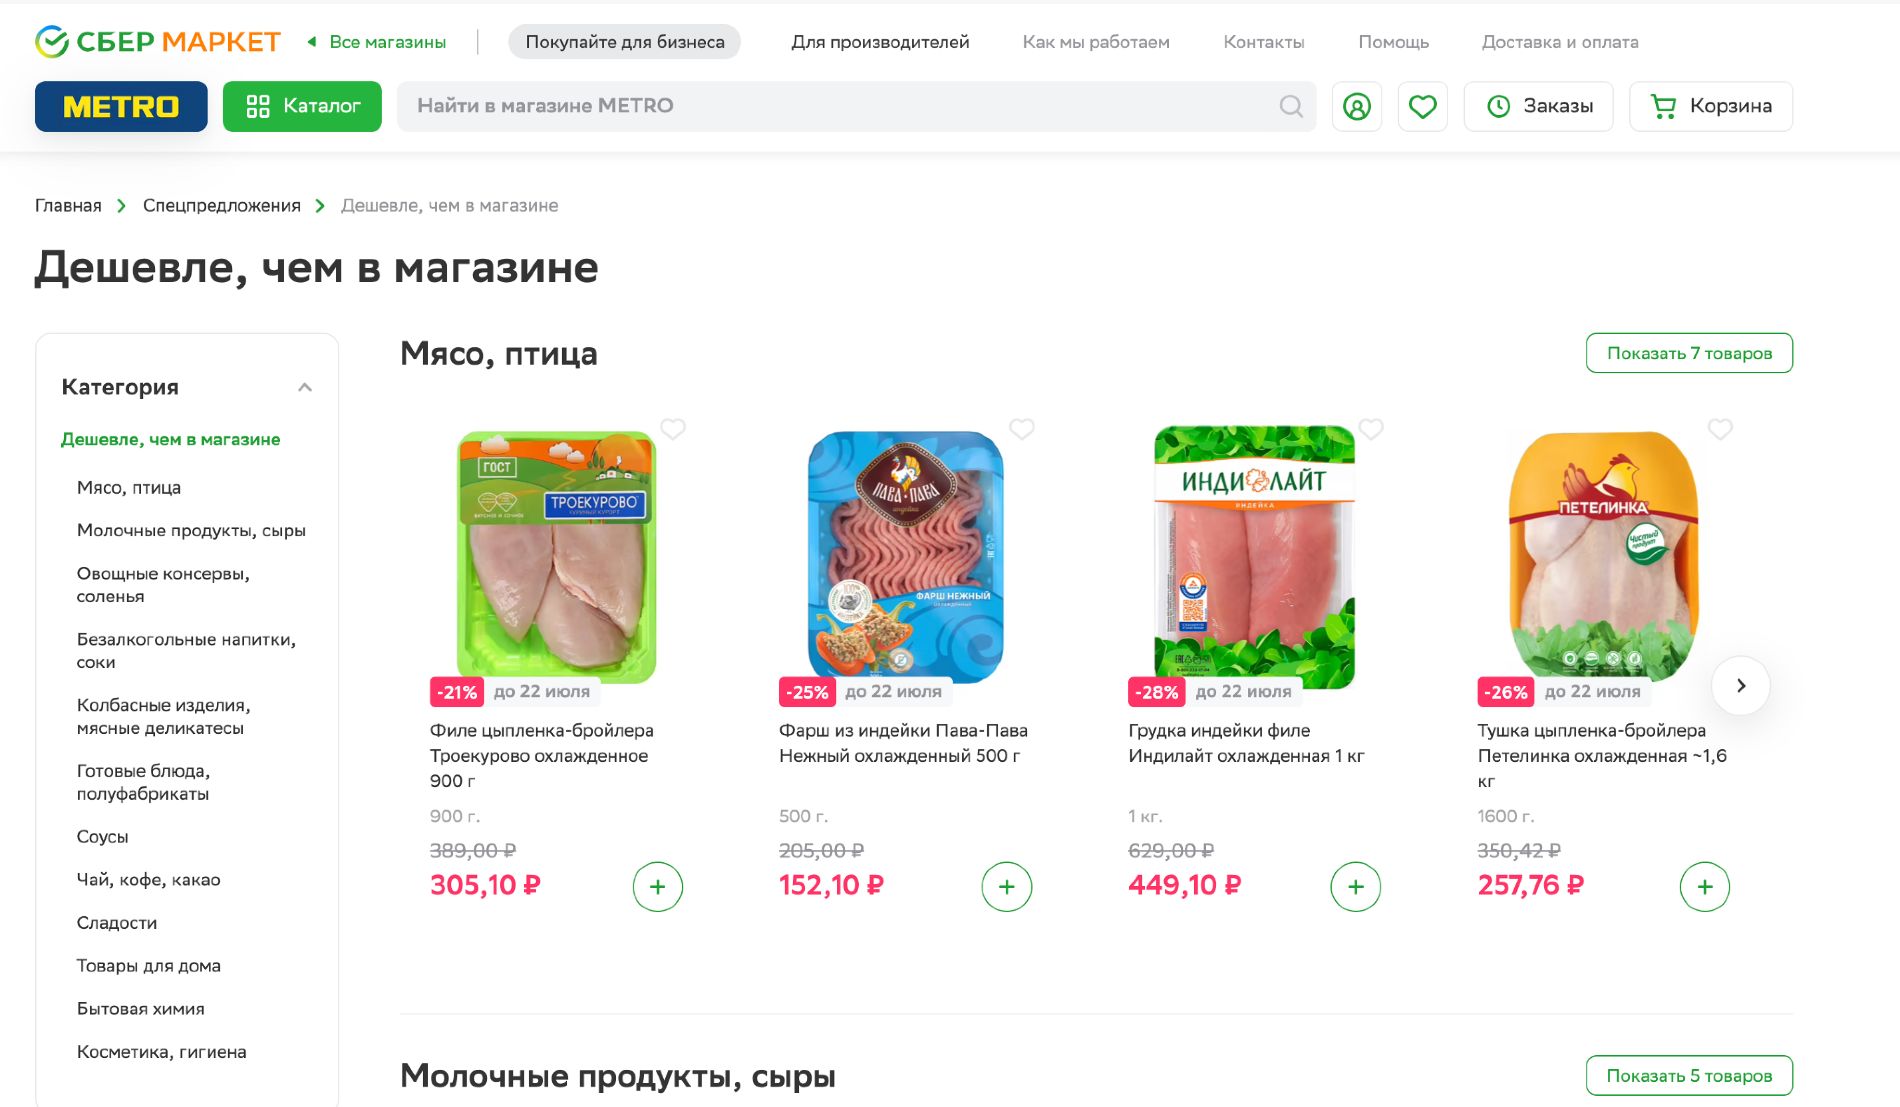  © Скриншот с сайта sbermarket.ru